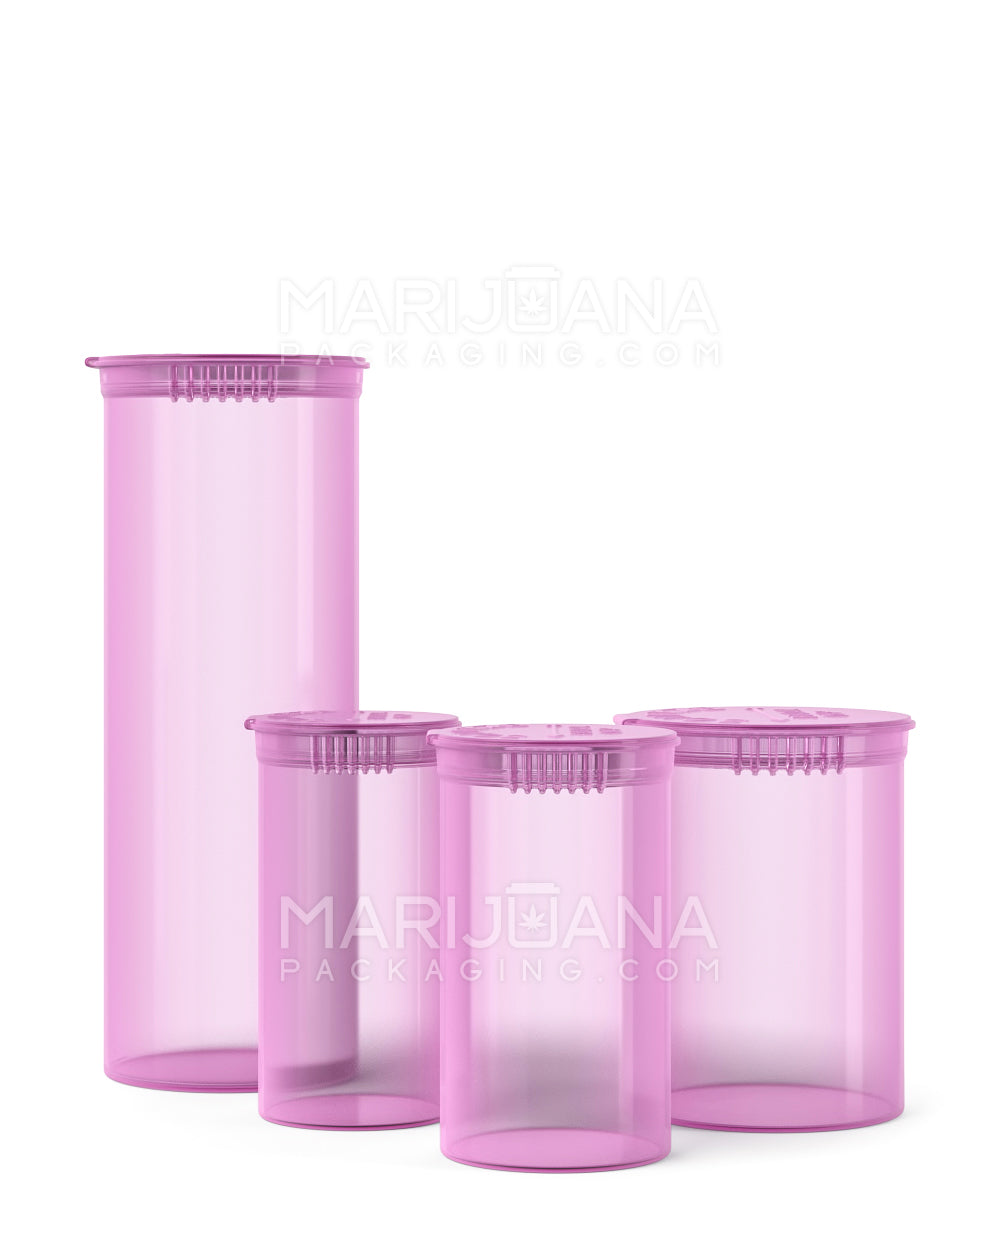 Child Resistant | Transparent Pink Pop Top Bottles | 30dr - 7g - 150 Count - 5